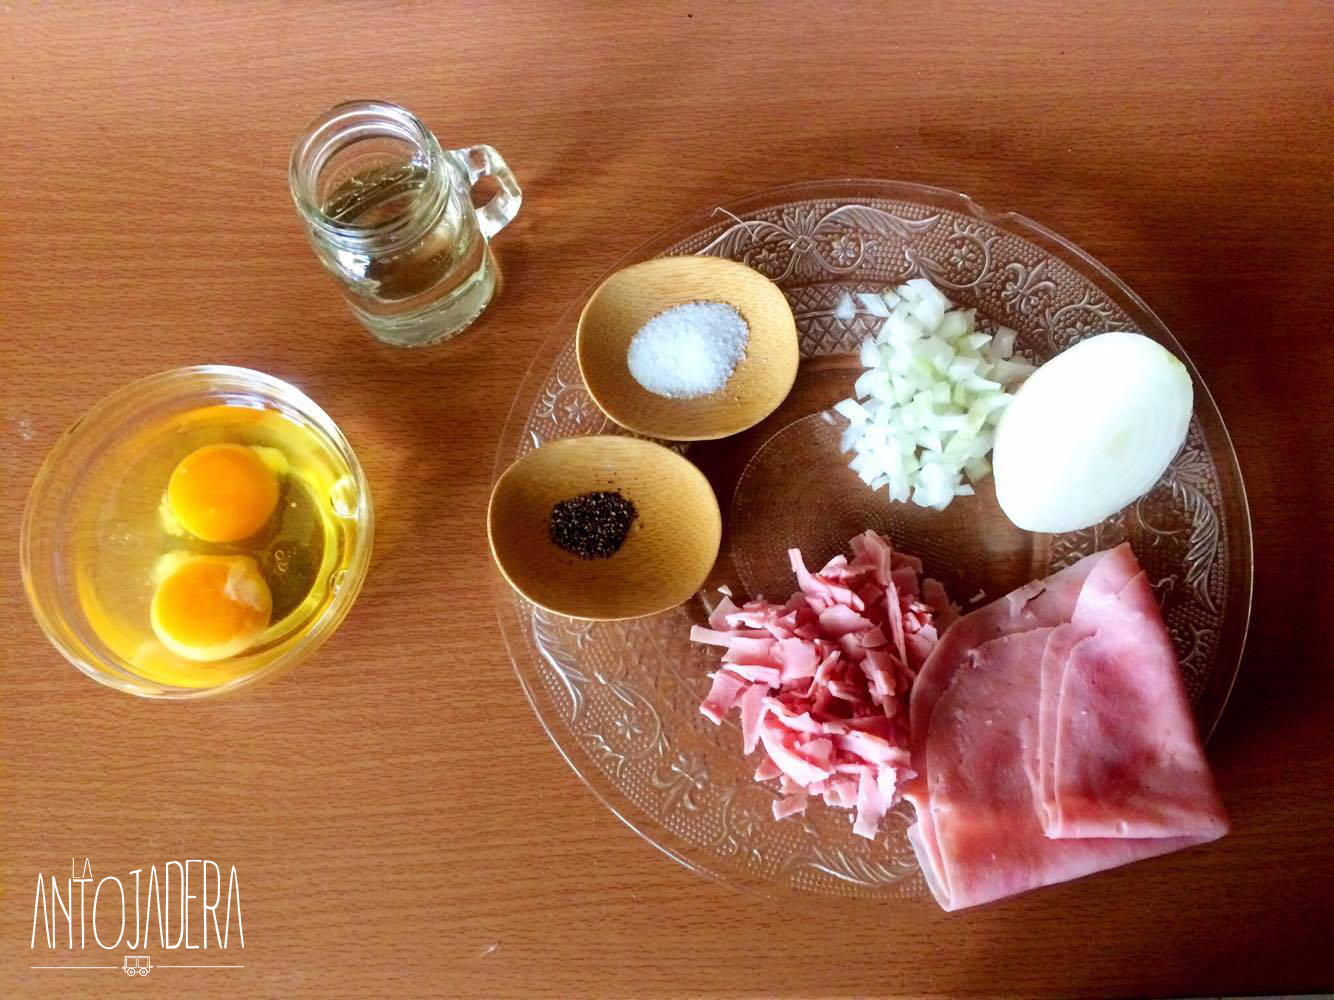 La Antojadera | Huevo u Omelette con Jamón